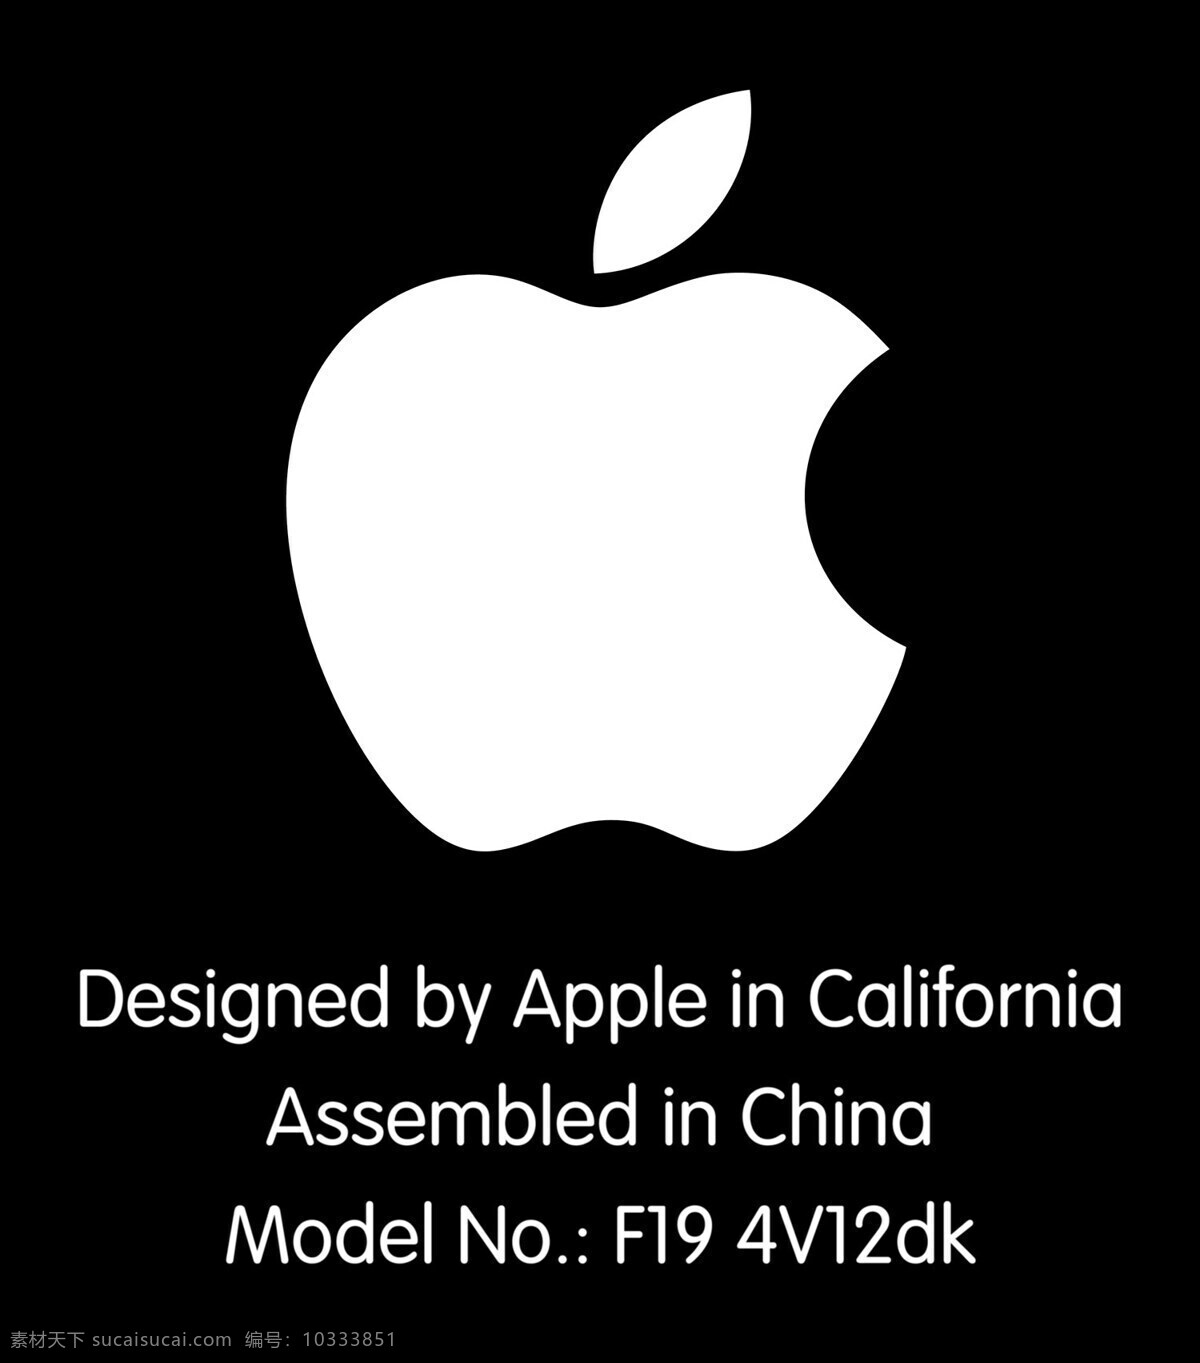 现代 时尚 白色 简约 苹果 电脑 鼠标 3d 模型 苹果电脑 无线 模型素材